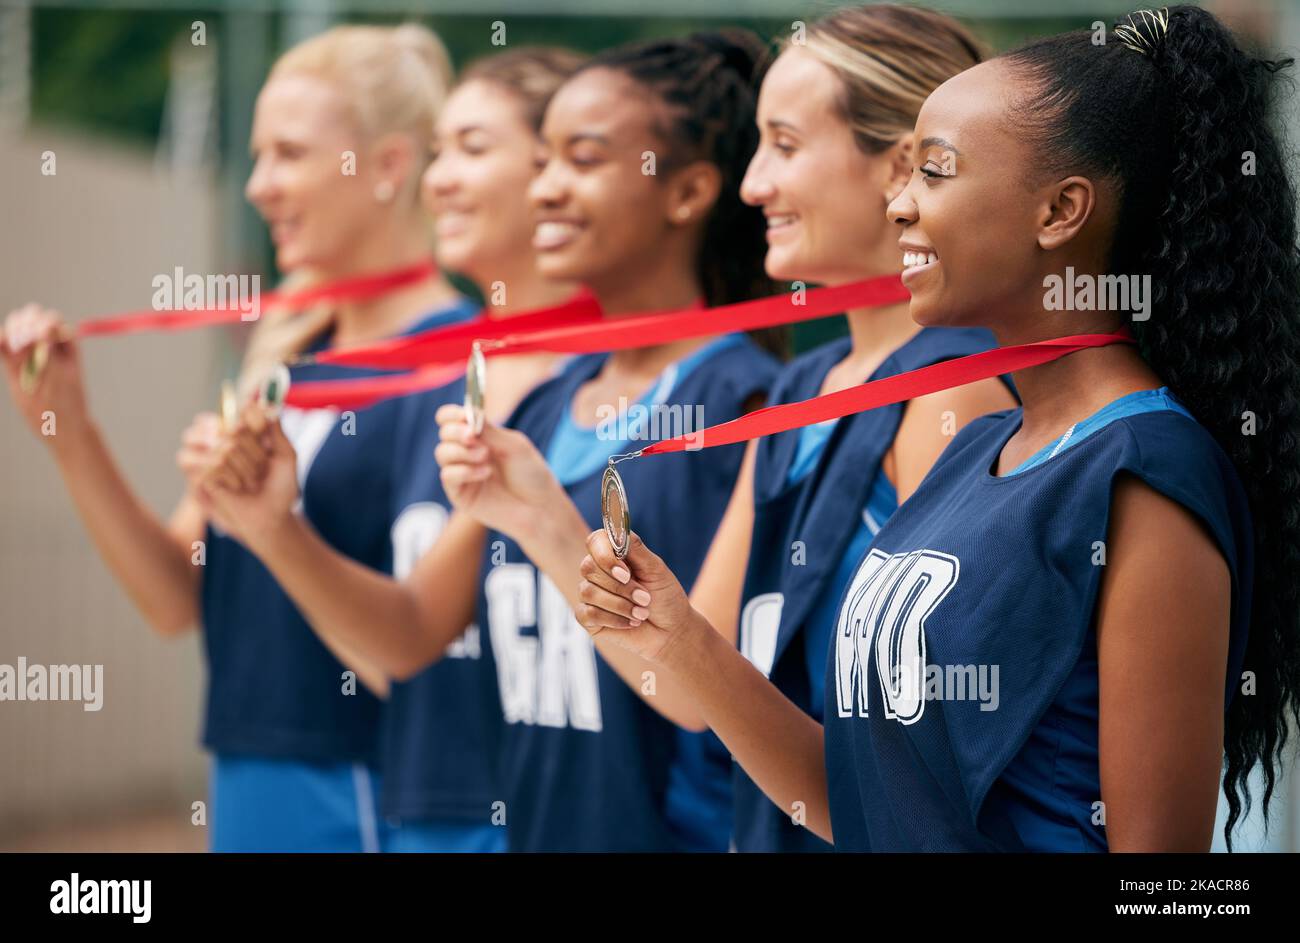 Goldmedaillengewinnerin, Netball-Team und Frauen feiern gemeinsam sportliche Erfolge, Vielfalt und Spielsieg im olympischen Wettbewerb. Teamarbeit, Unterstützung und Stockfoto